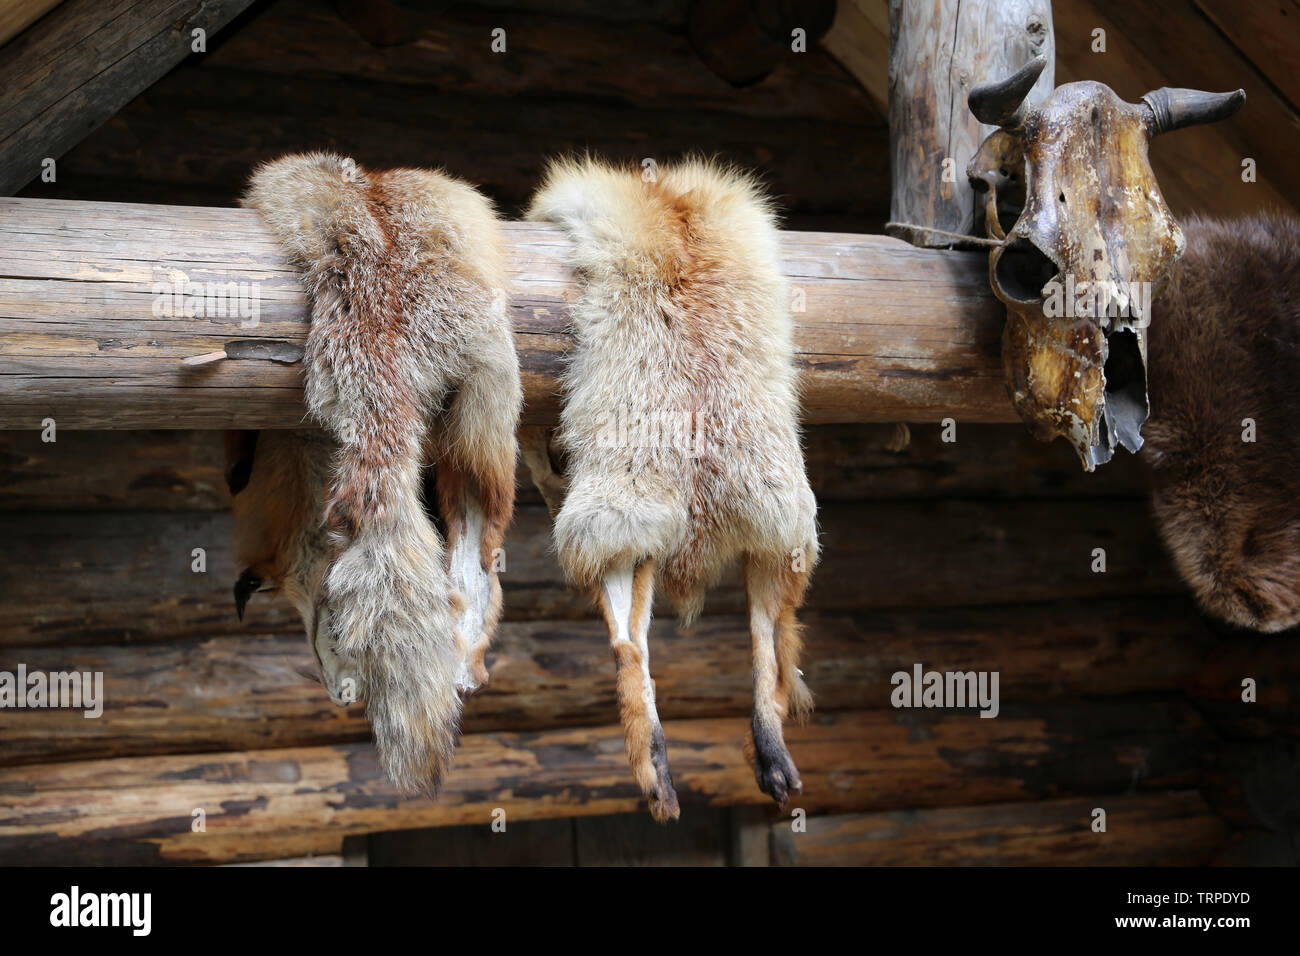 Fox pellicce a secco sul muro di una casetta di legno, preda del cacciatore. Concetto di caccia di animali da pelliccia Foto Stock